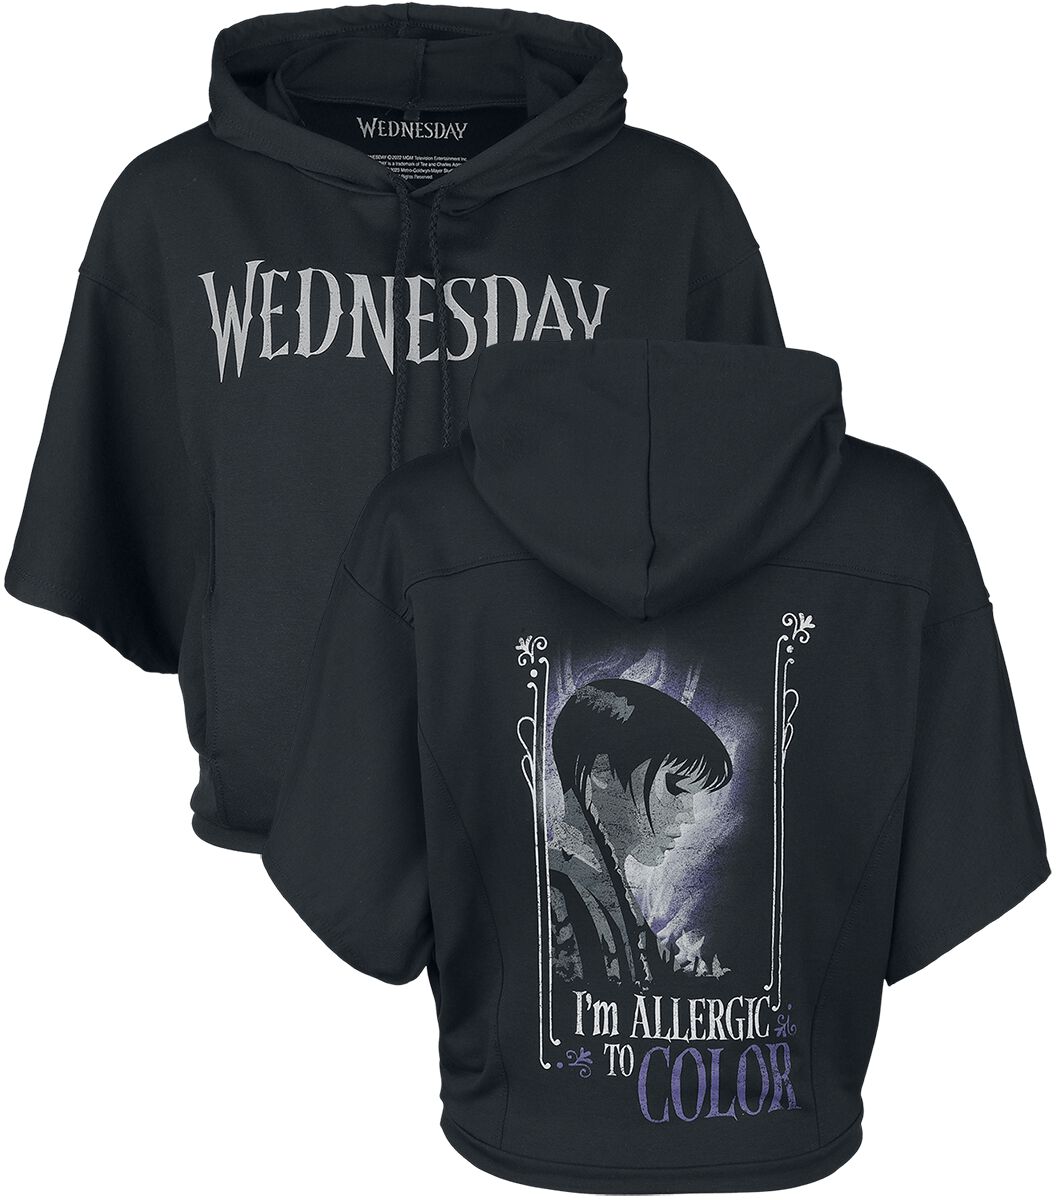 Sweat-shirt à capuche de Wednesday - Colour Allergic - S à XXL - pour Femme - noir